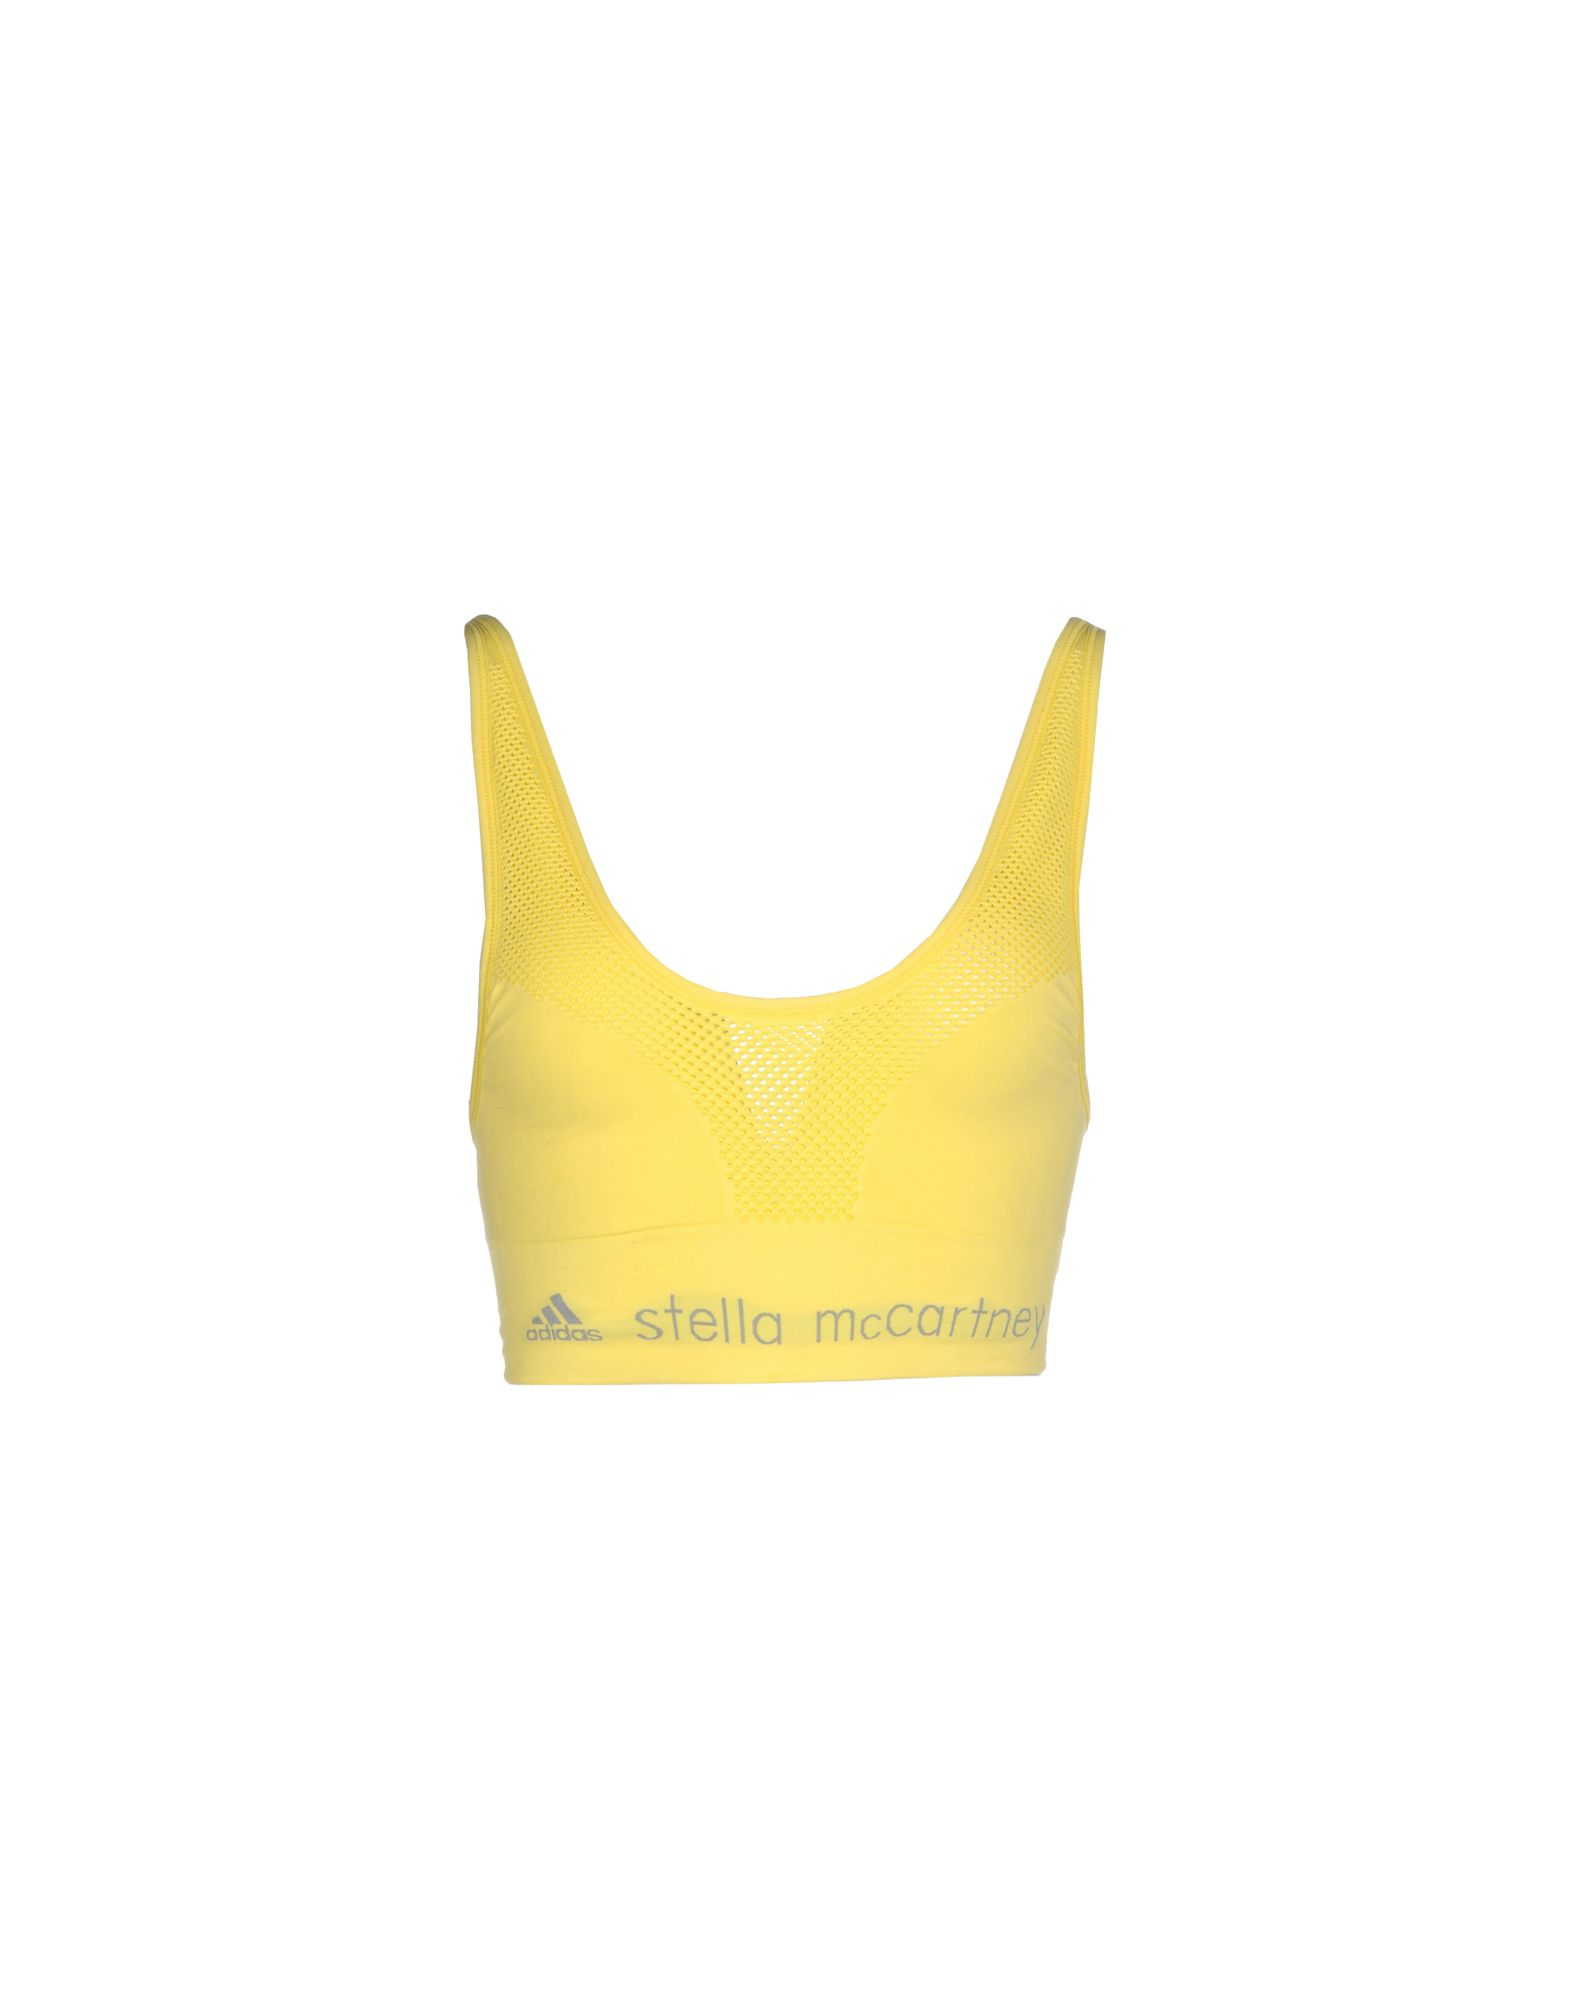 Lyst - Adidas By Stella Mccartney Bra in Yellow